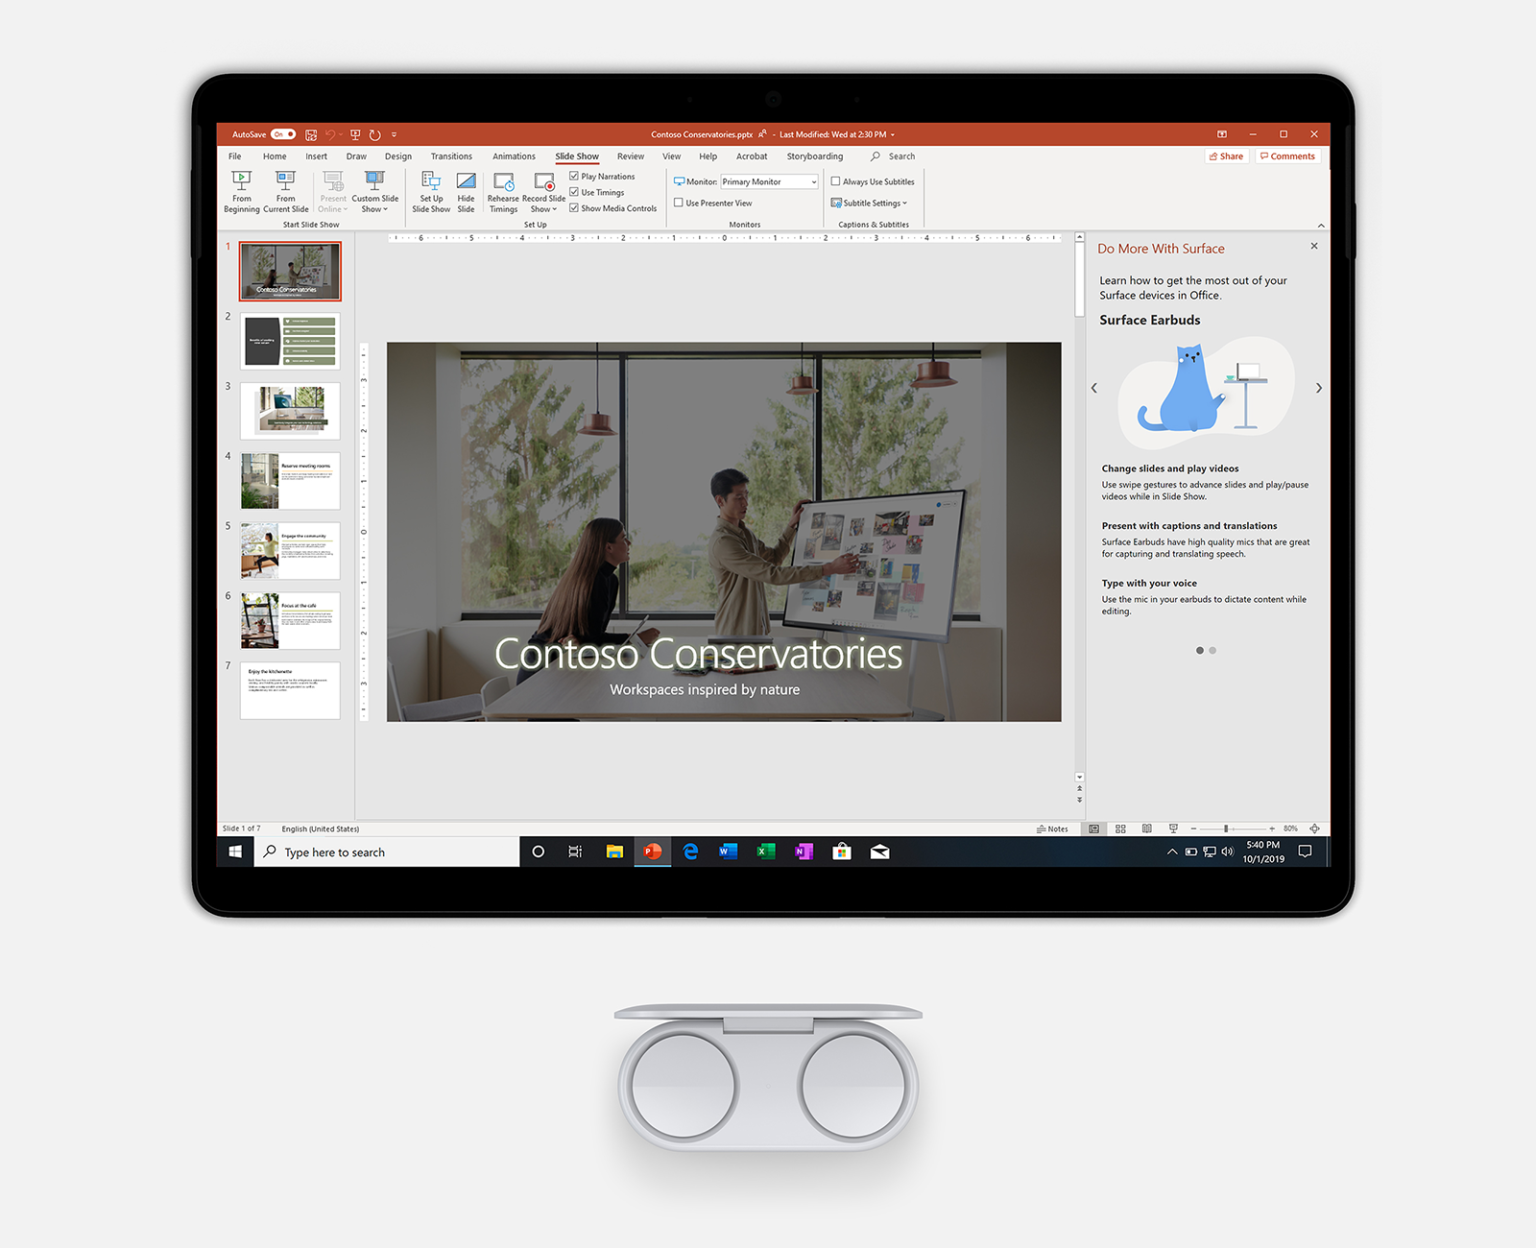 PowerPoint'in görüntülendiği Surface Pro 7 ve kulaklık resmi.